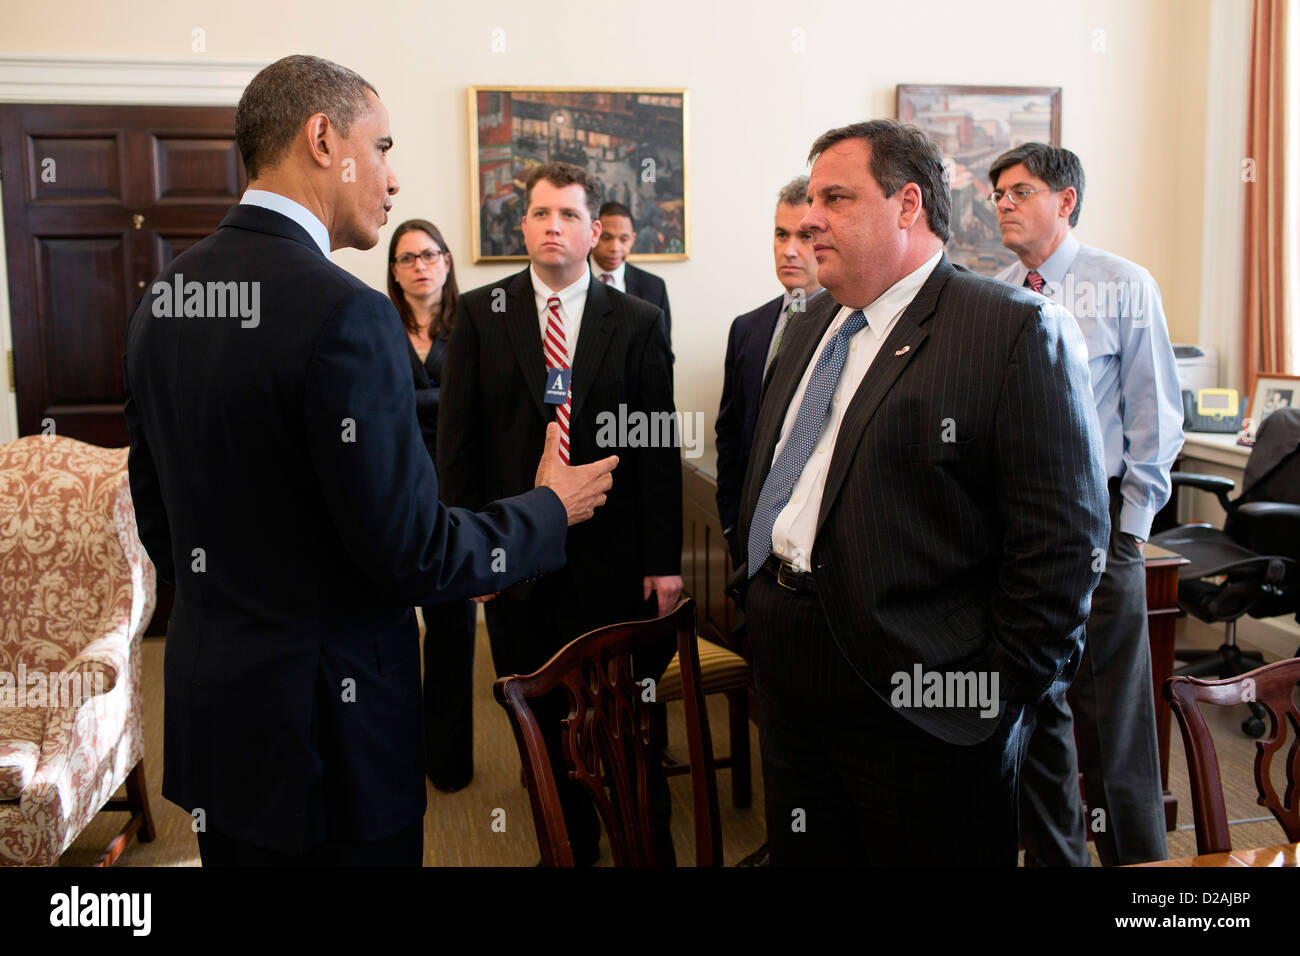 Il Presidente Usa Barack Obama saluta New Jersey governatore Chris Christie e i membri del suo personale in capo della staff Jack Lew dell'ufficio nell'ala ovest della Casa Bianca il 6 dicembre 2012 a Washington, DC. Foto Stock